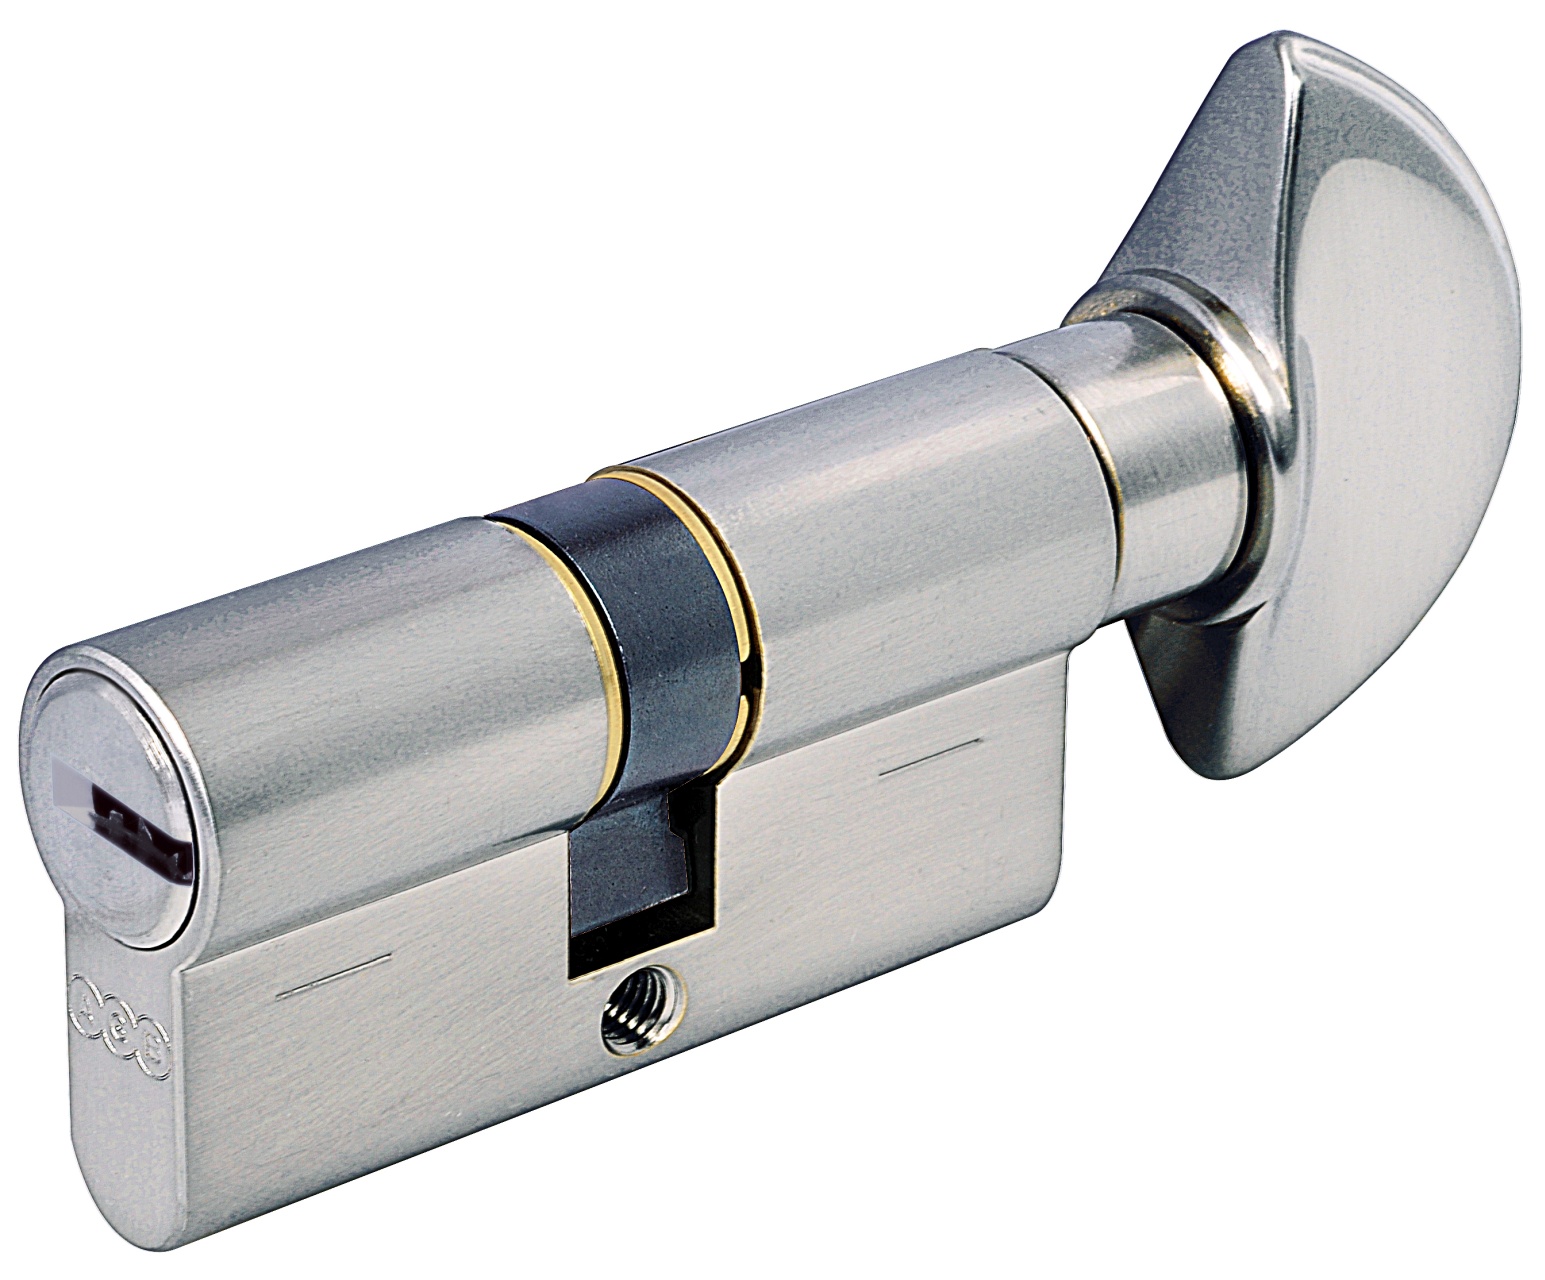 AGB -  Cilindro SCUDO 5000 PS frizionato anti bamping con chiave e pomolo ka - a chiave uguale - col. NICHELATO OPACO - lunghezza 100 - misura 45-10-45